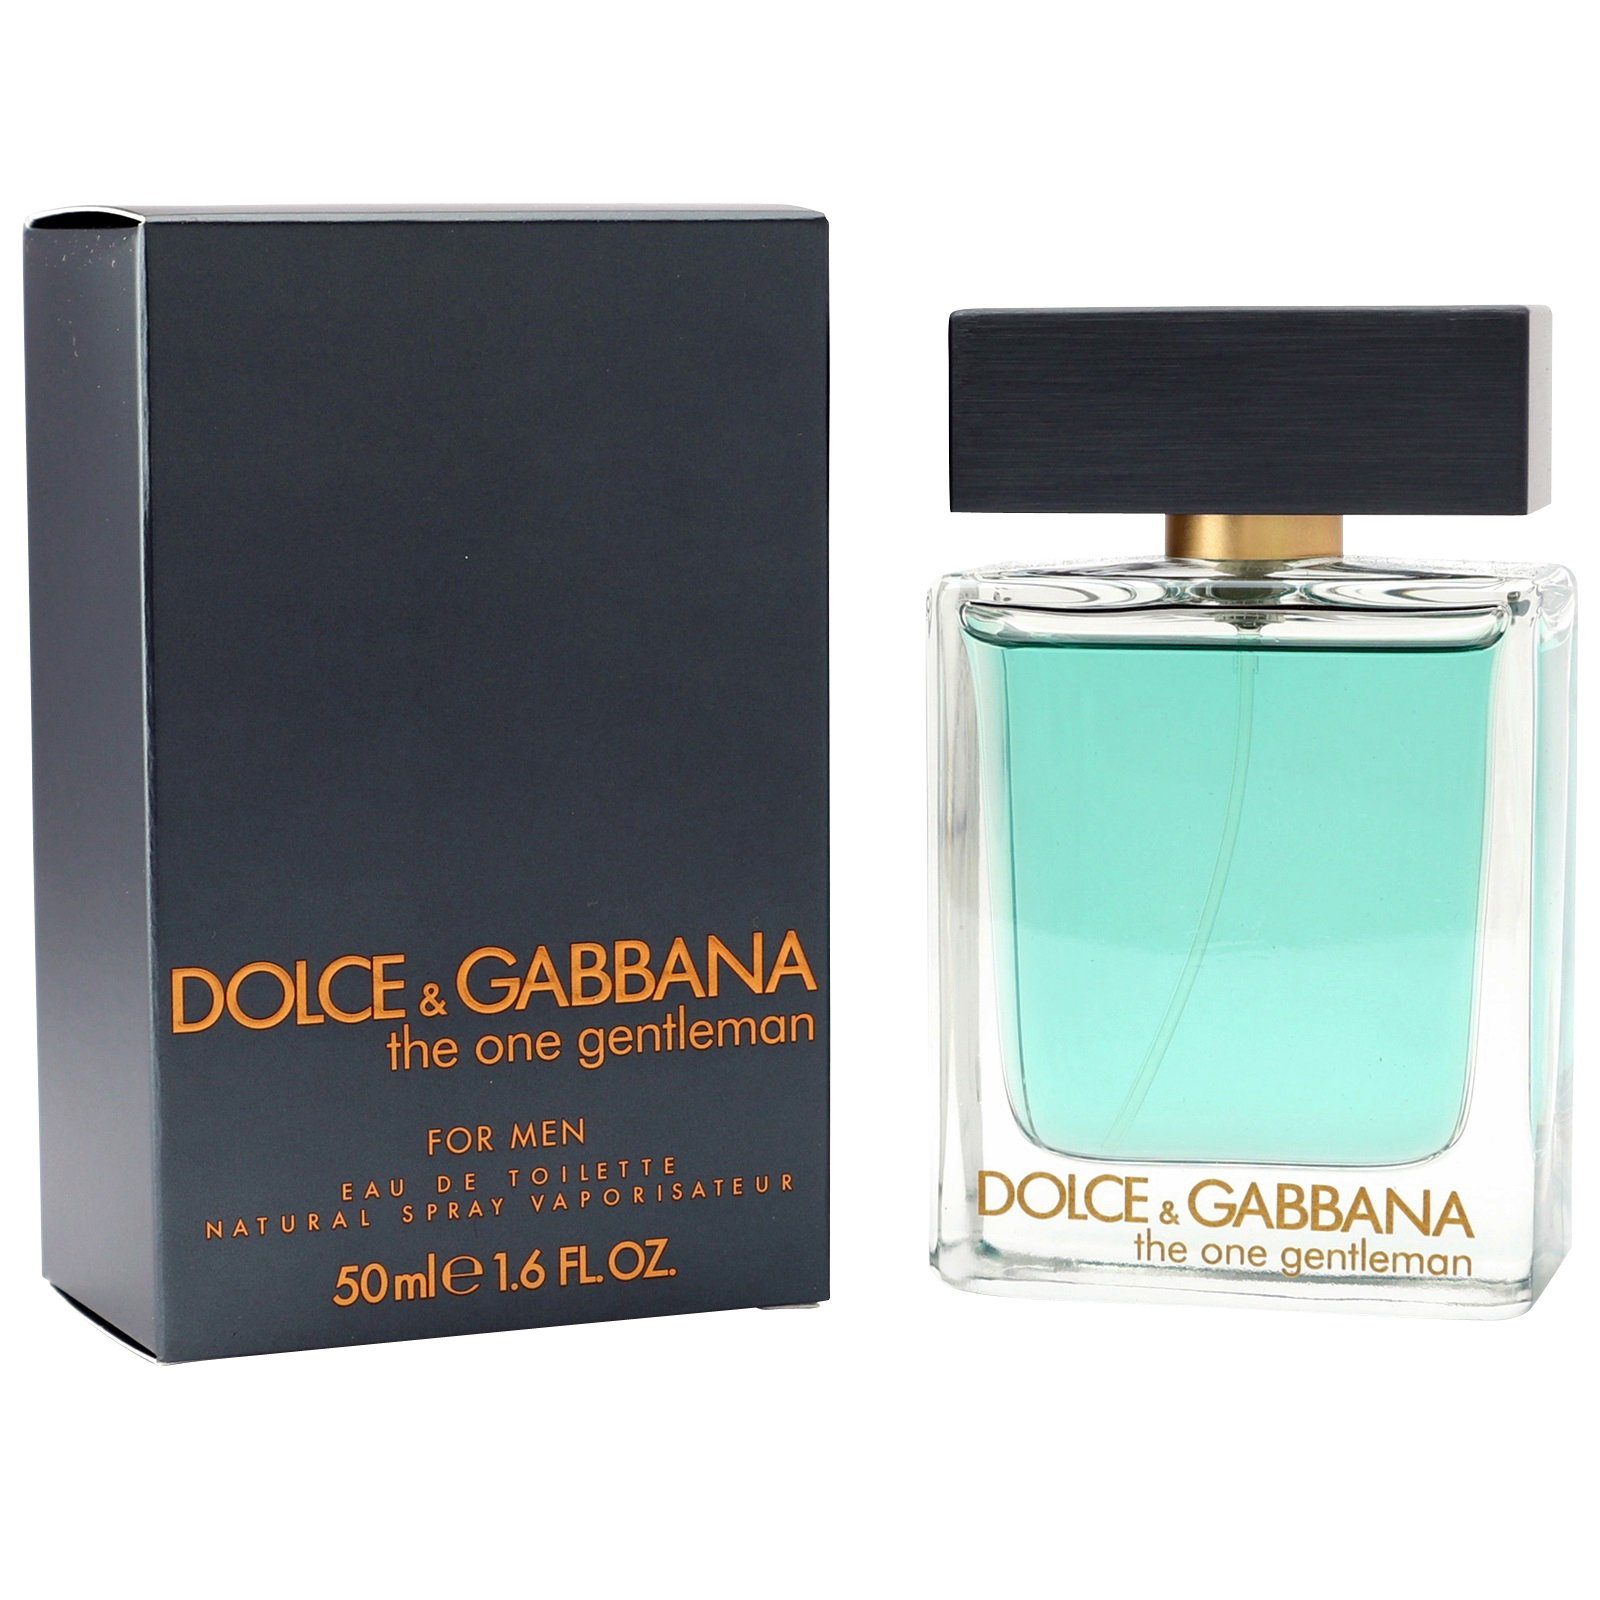 DOLCE & Gabbana Gentleman ml Spray & Eau de Toilette One Dolce 50 GABBANA The Toilette de Eau